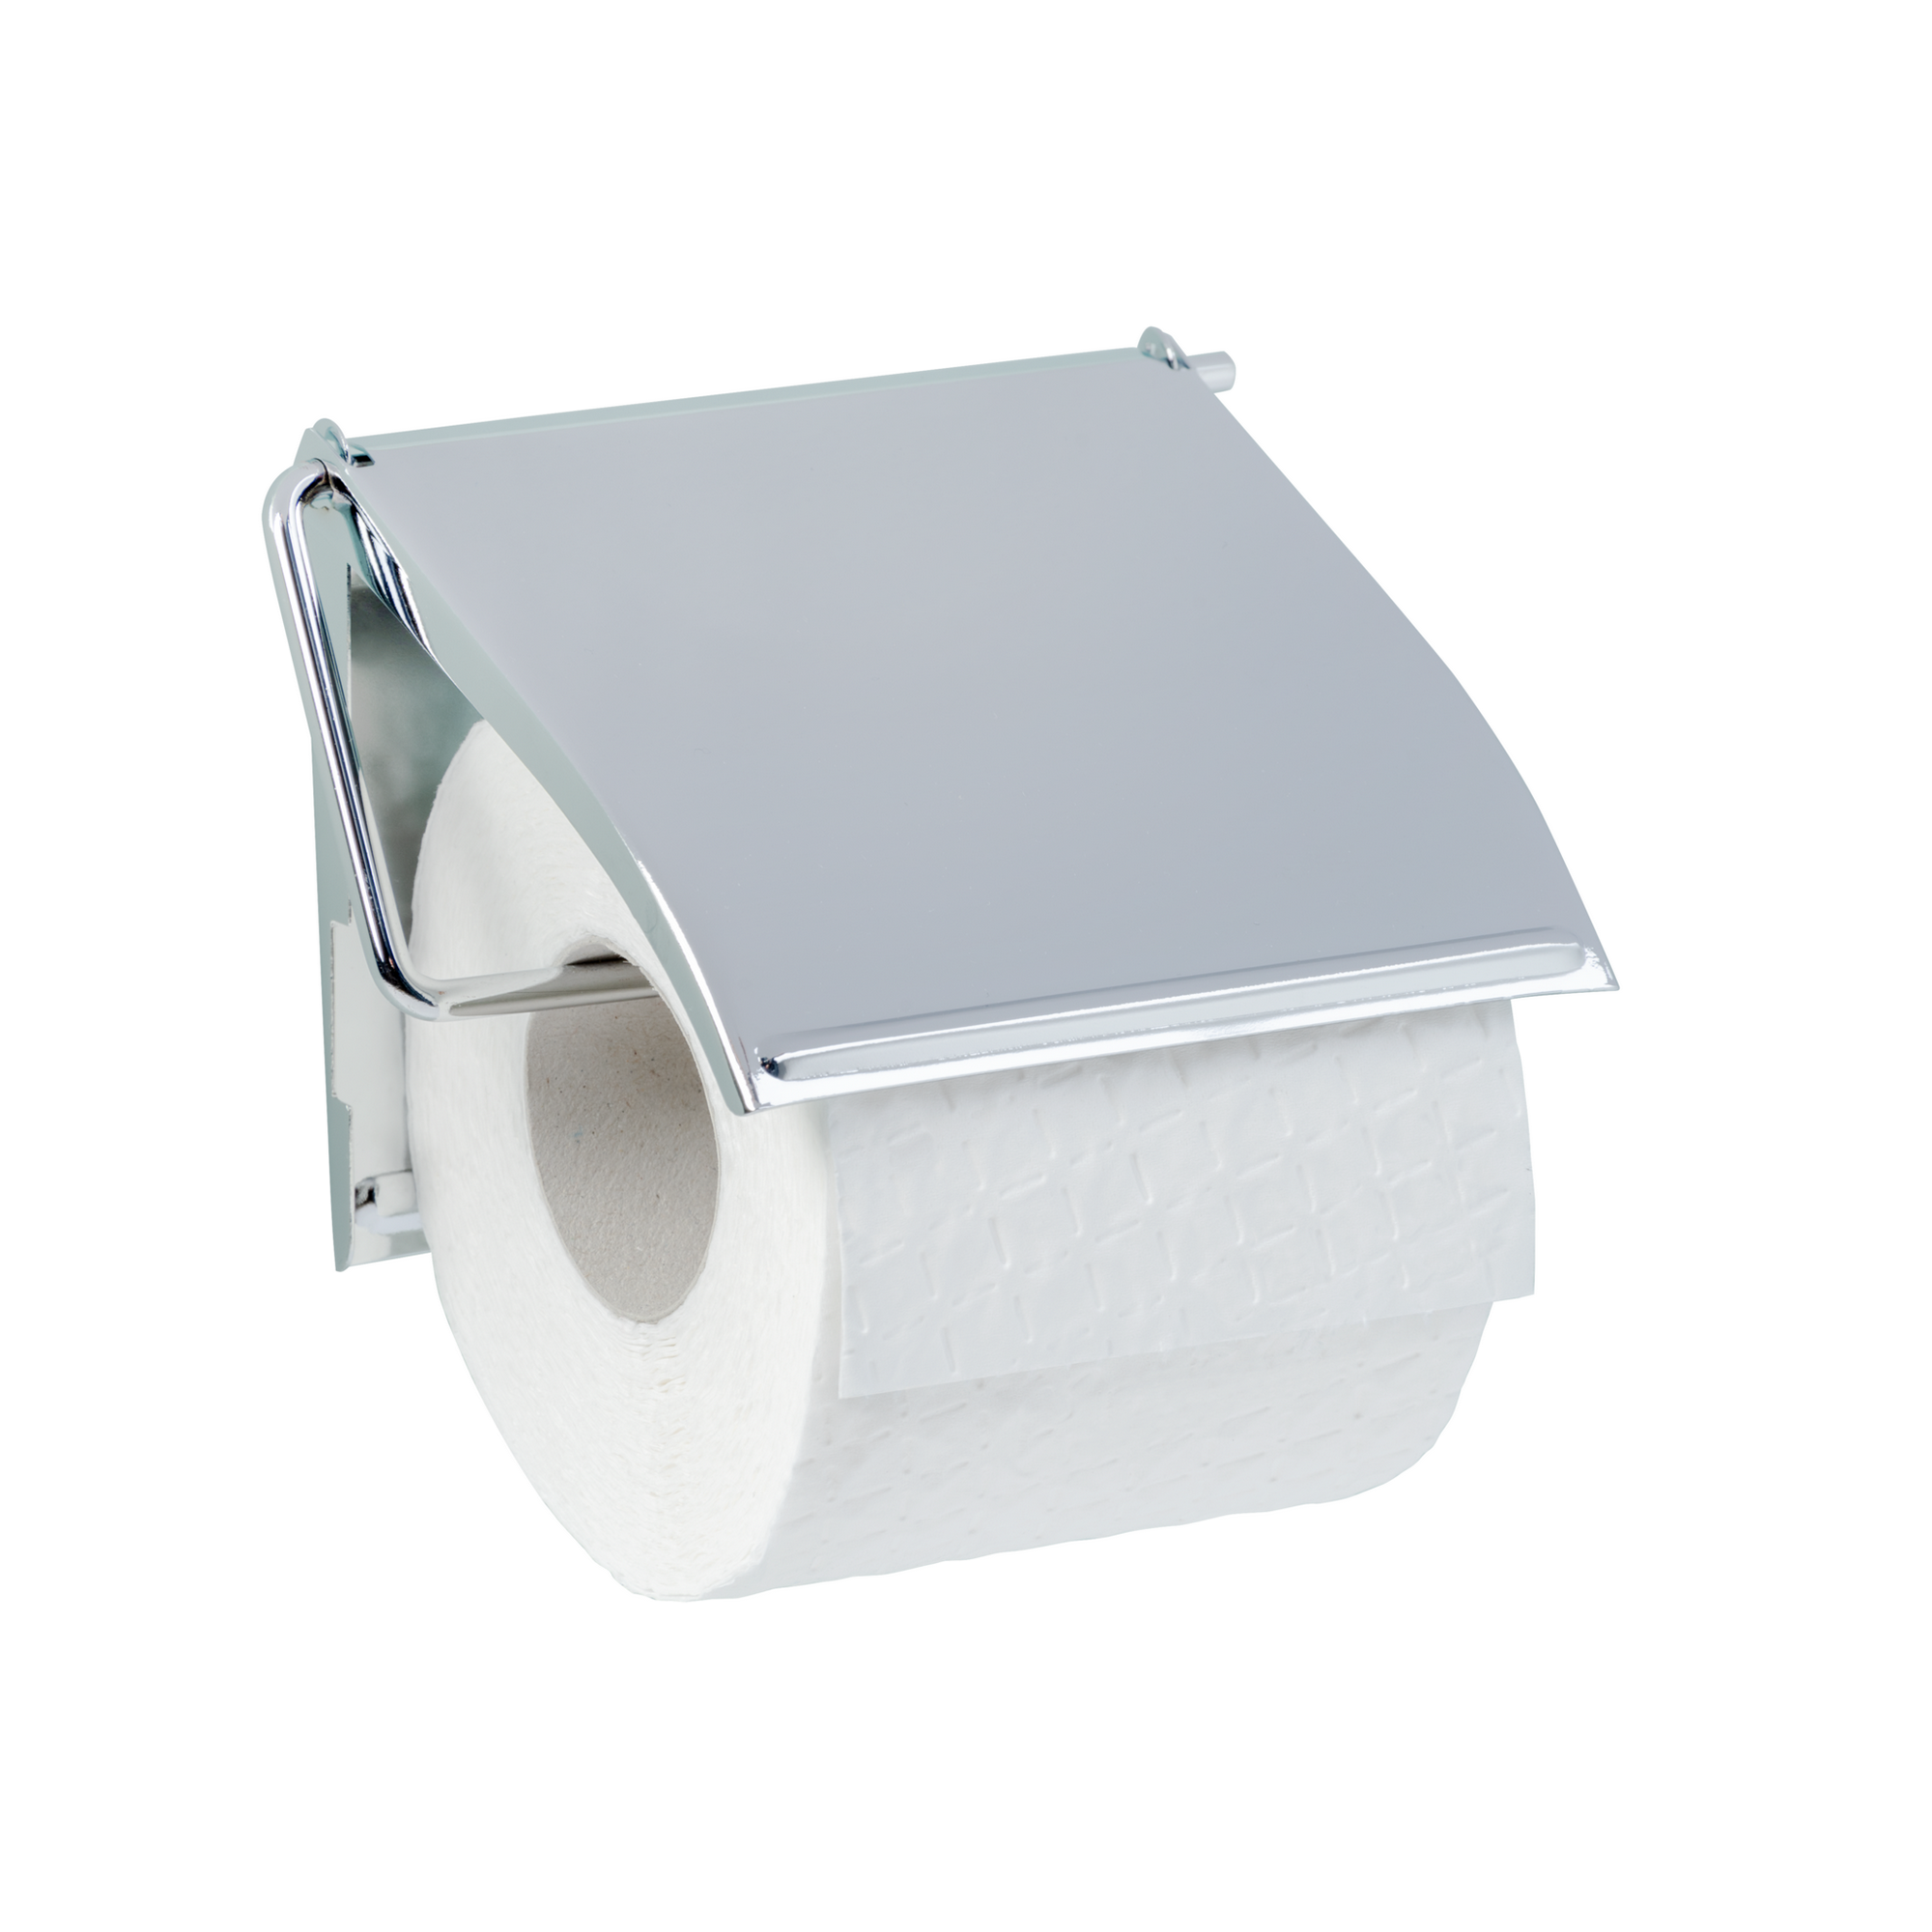 Toilettenpapierhalter 'Cover' verchromt, mit Deckel + product picture